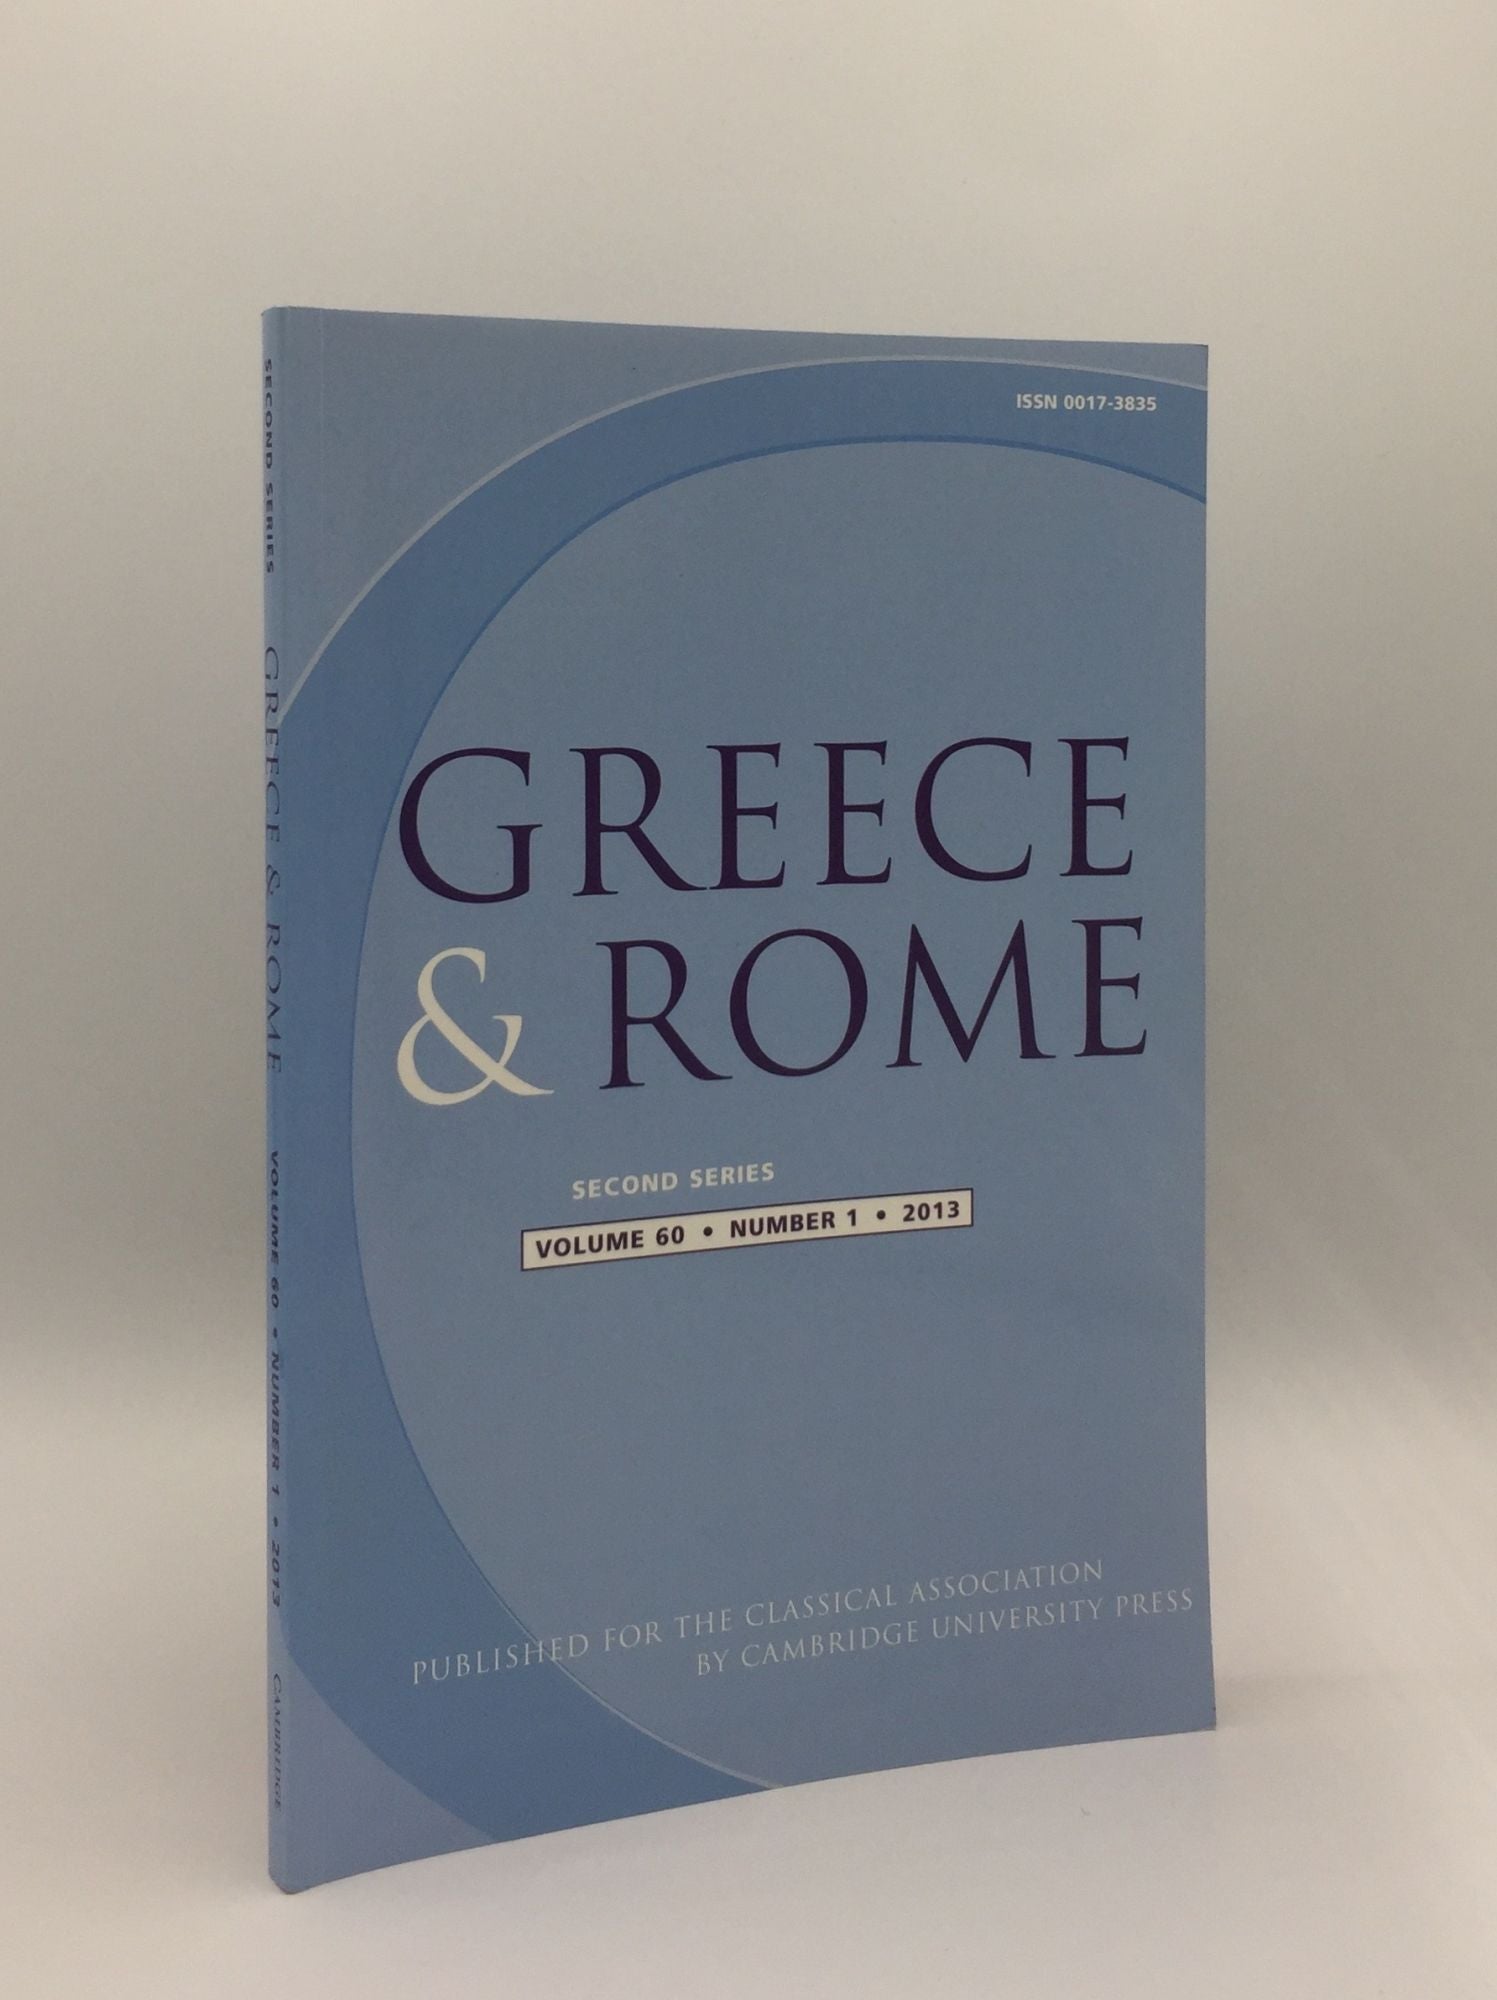 TAYLOR J., IZZET V., SHORROCK R. - Greece & Rome Second Series April 2013 Vol. 60 No. 1